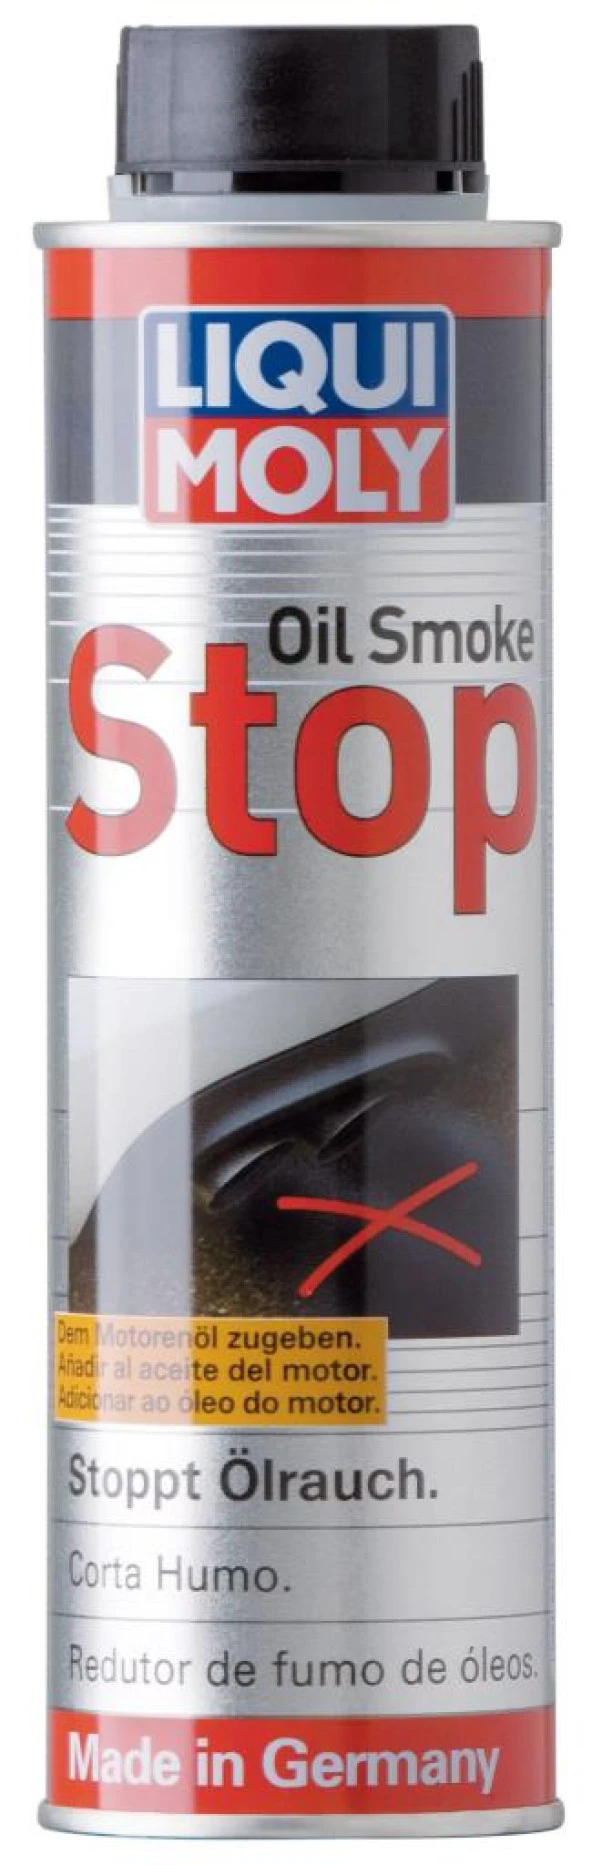 Liqui Moly Oil Smoke Stop Duman Kesici Önleyici Yağ Katkısı. 2122